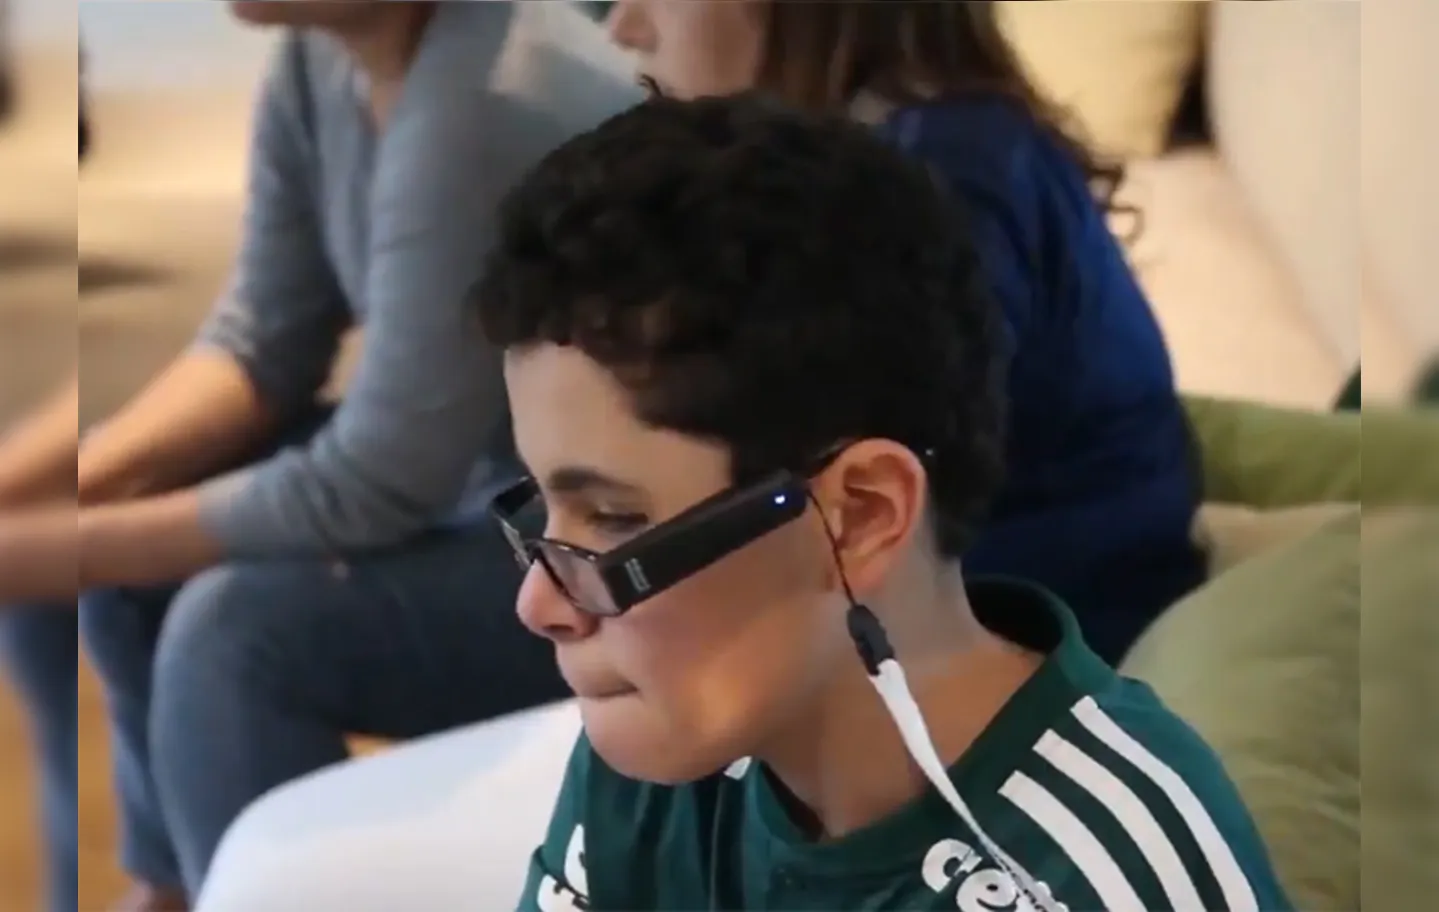 Nickollas emocionou os amantes do futebol em 2018 ao aparecer na arquibancada do Allianz Parque ao lado da sua mãe, que narrava o jogo